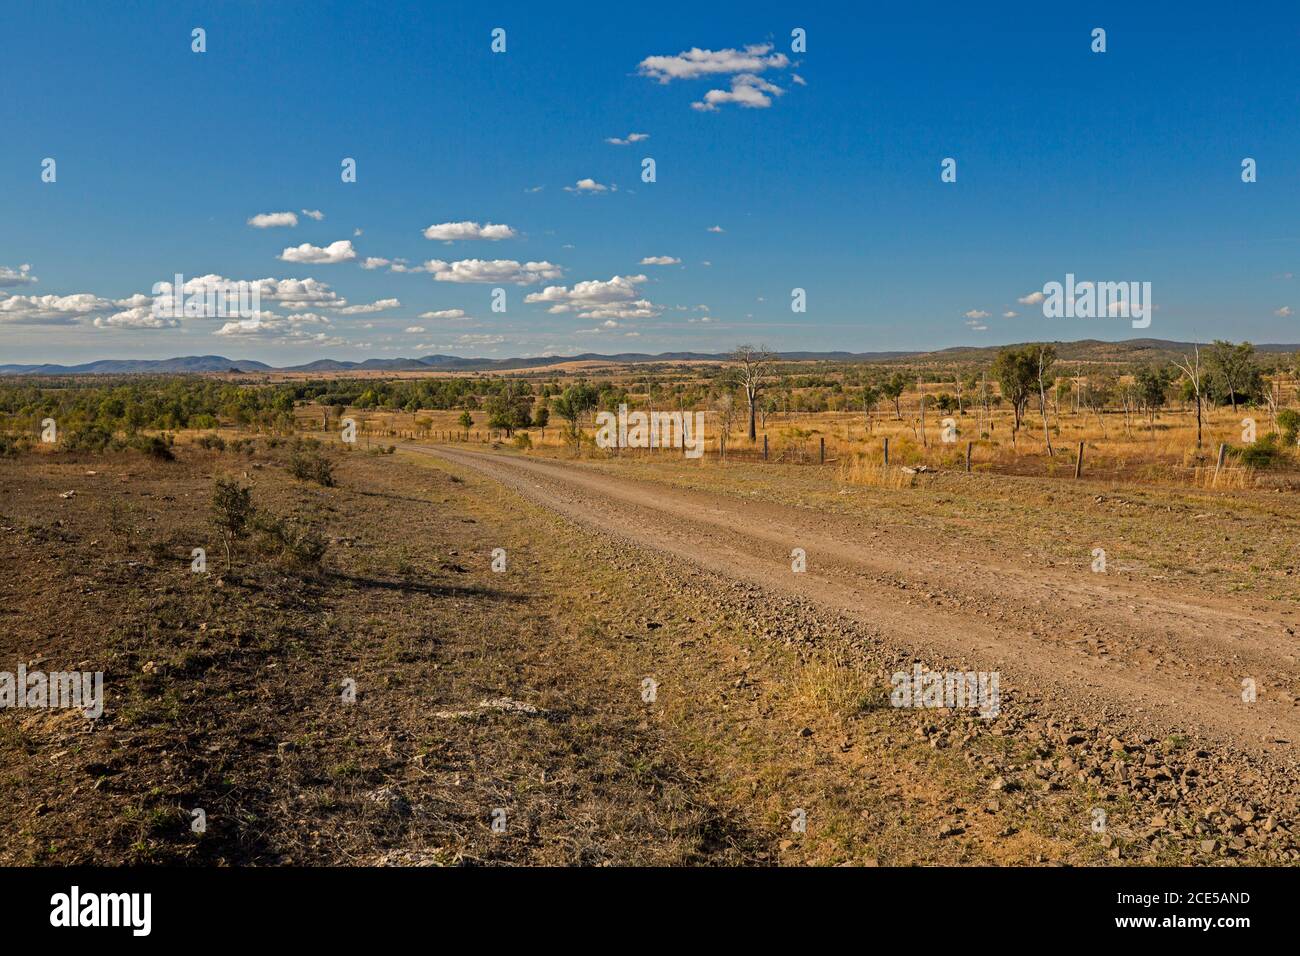 Arido paesaggio australiano dell'entroterra durante la siccità con la strada di ghiaia rossa spianando attraverso le pianure a basse catene montuose lontane sotto il cielo blu con le nuvole Foto Stock